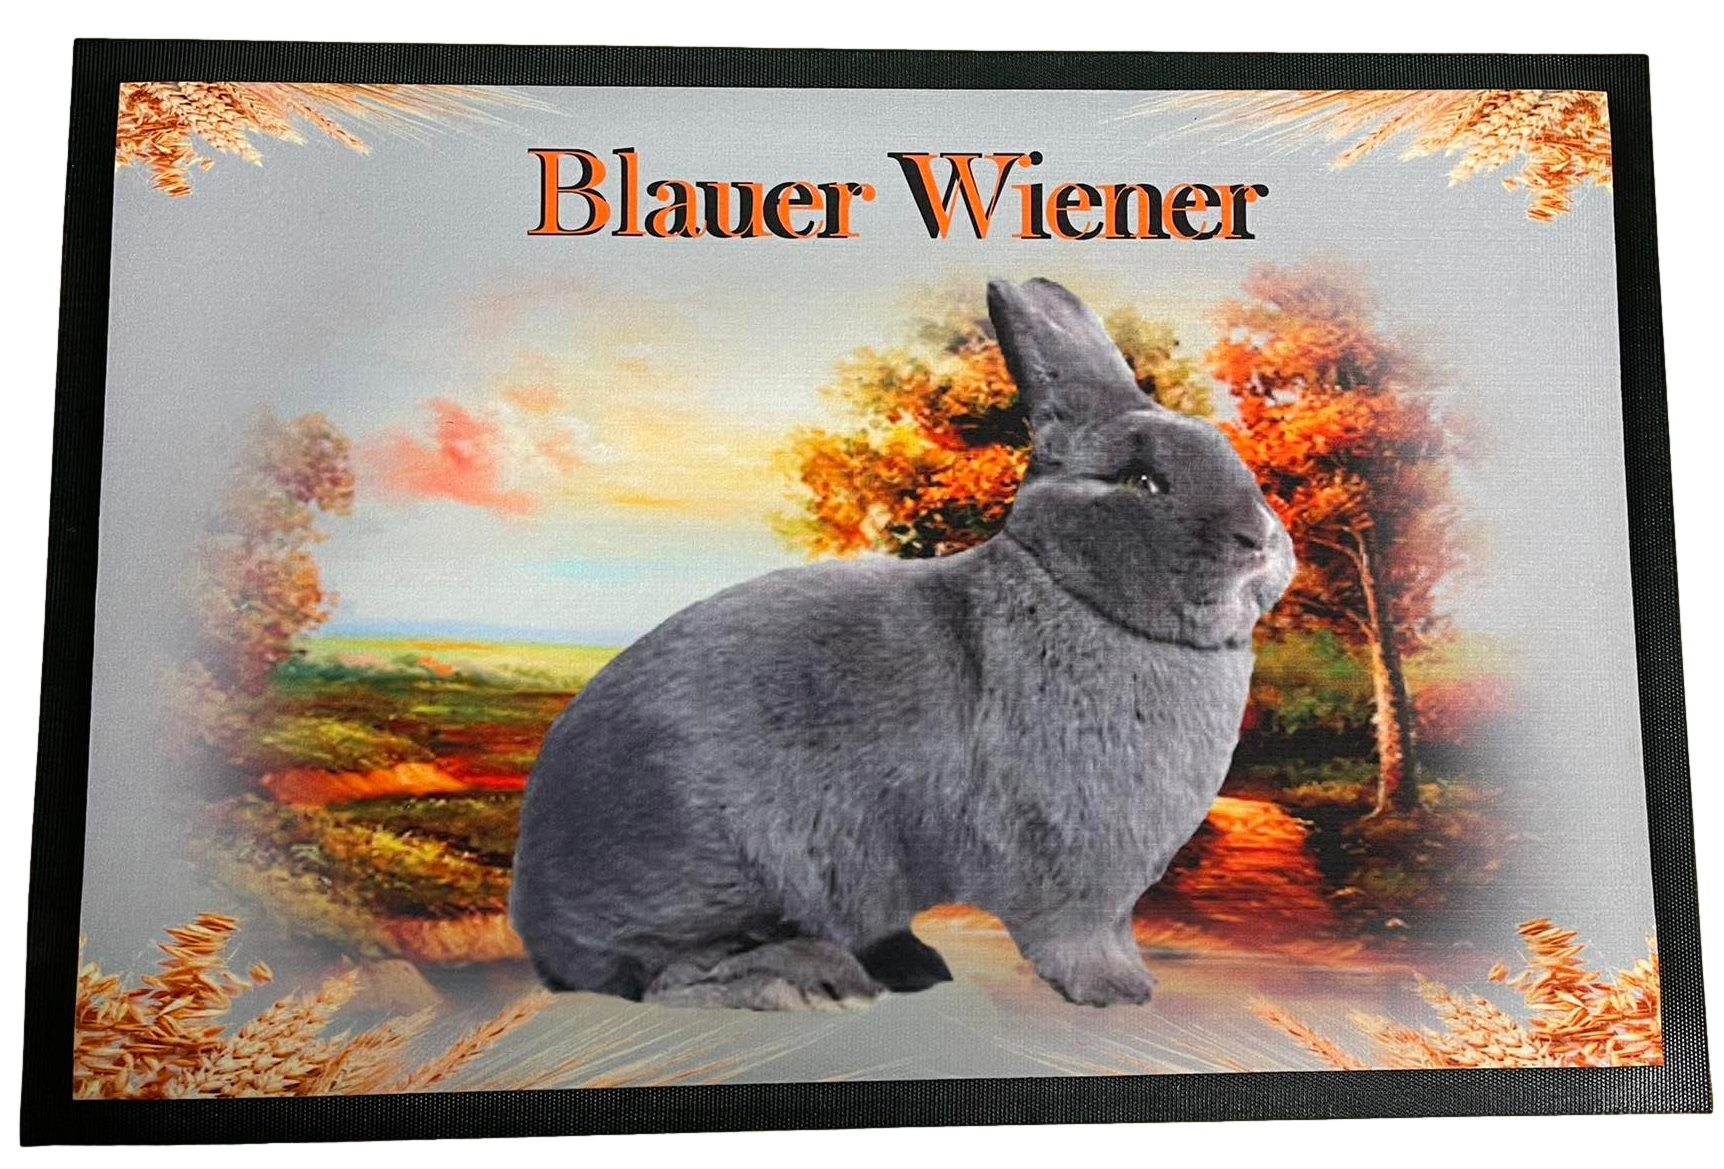 Fußmatte Schmutzfangmatte rutschfest Kaninchen Blauer Wiener 75x50cm F008